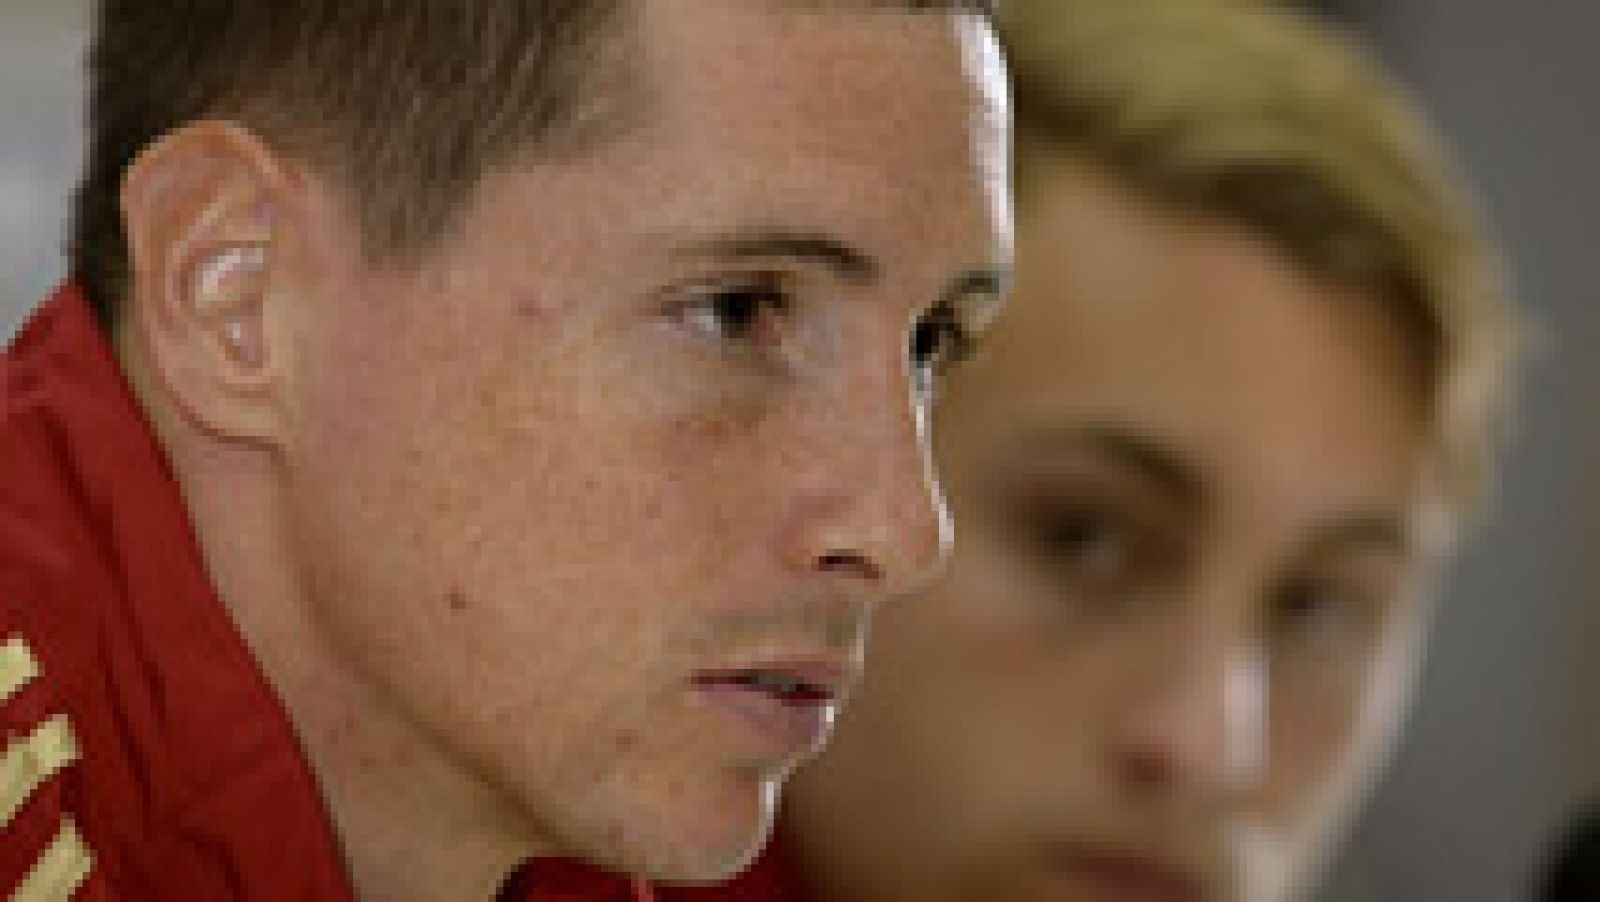  El delantero español cree que no se correrán riesgos con el estado de Diego Costa. "Si no puede vendrá otro compañero con la misma ilusión que Diego", dice Torres. "No pienso en Brasil, solo en disfrutar esta semana", afirma el debutante Deulofeu.